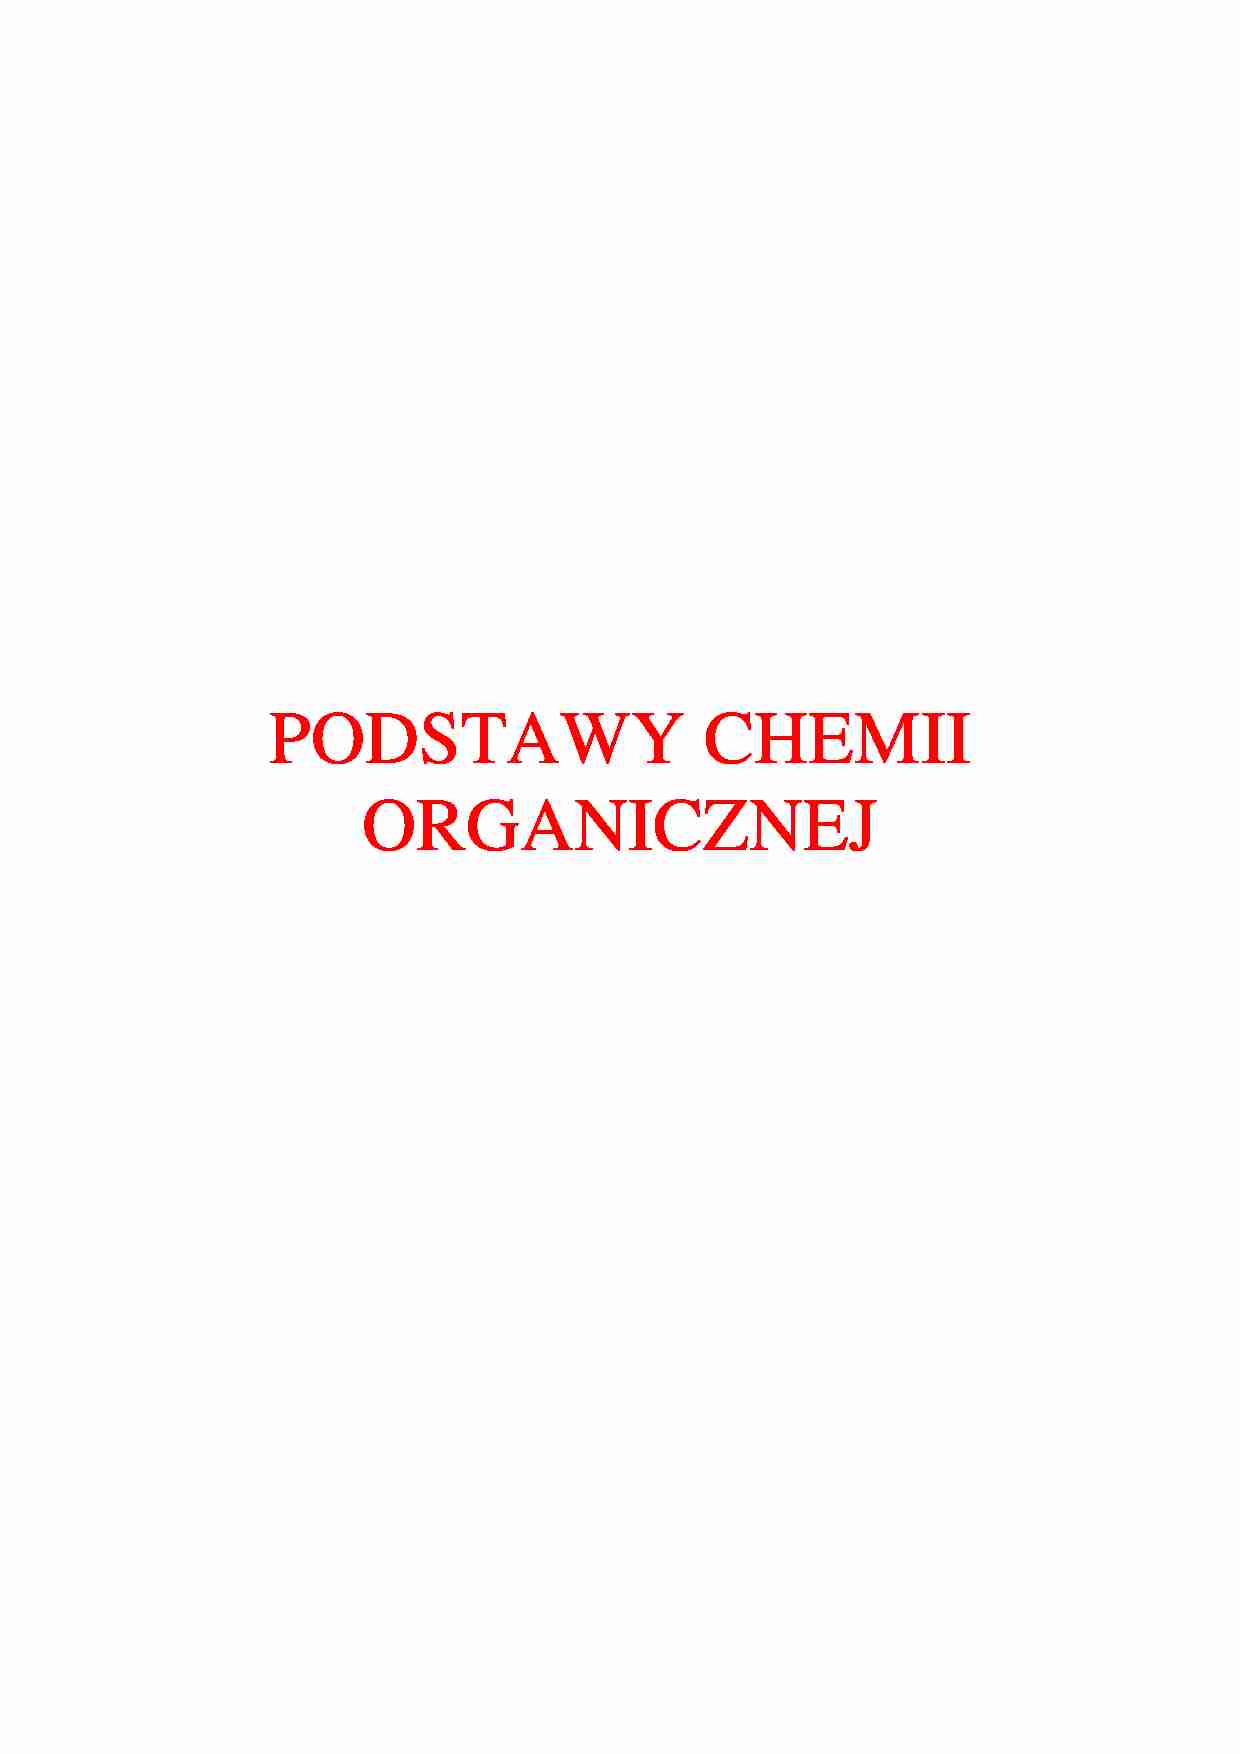 Podstawy chemii organicznej - omówienie - strona 1